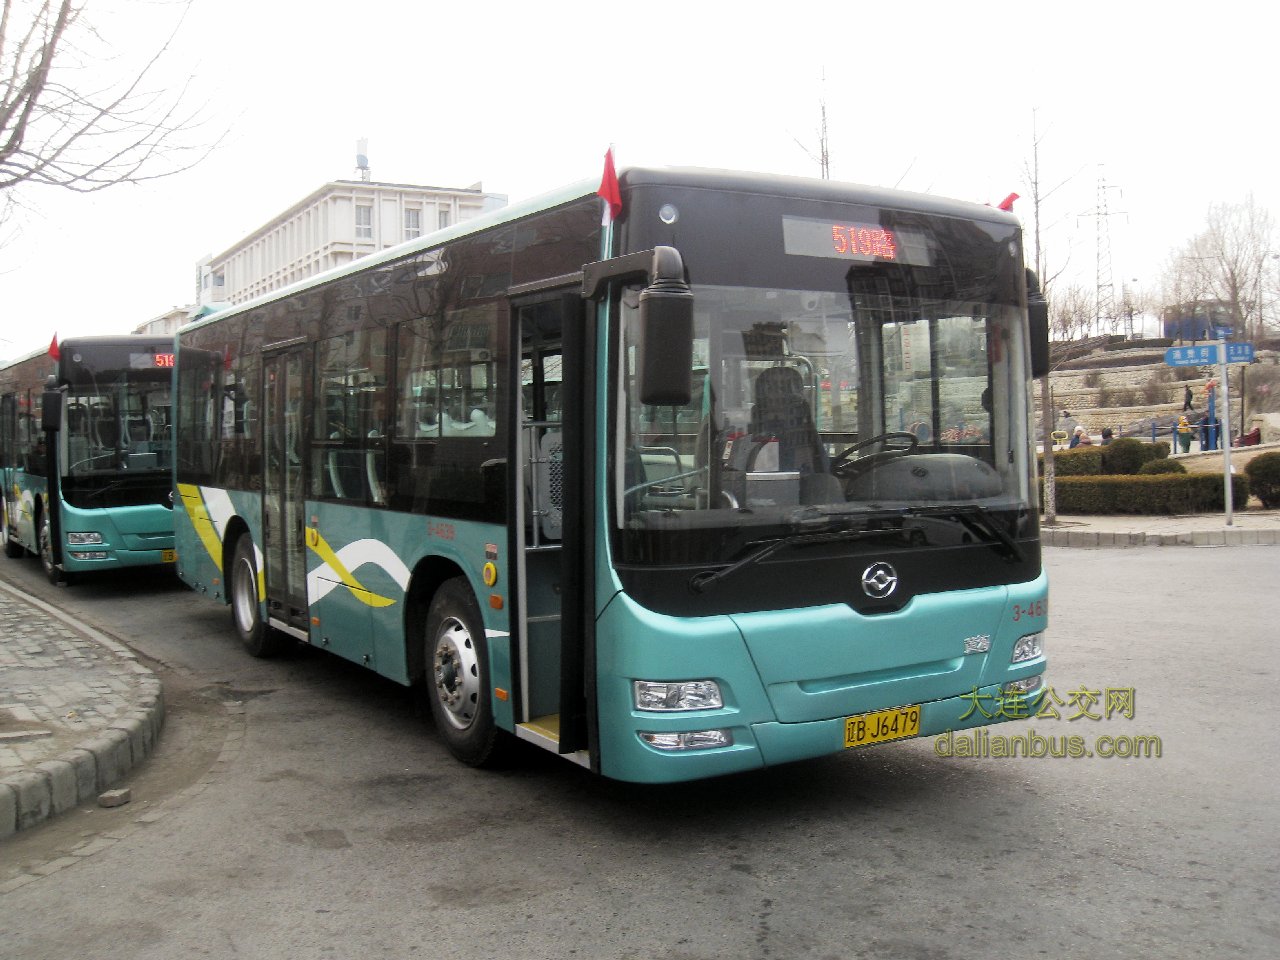 照片集--dl--公交车型(3) - 大连公交版 - 公交迷网 -; 大连市公交